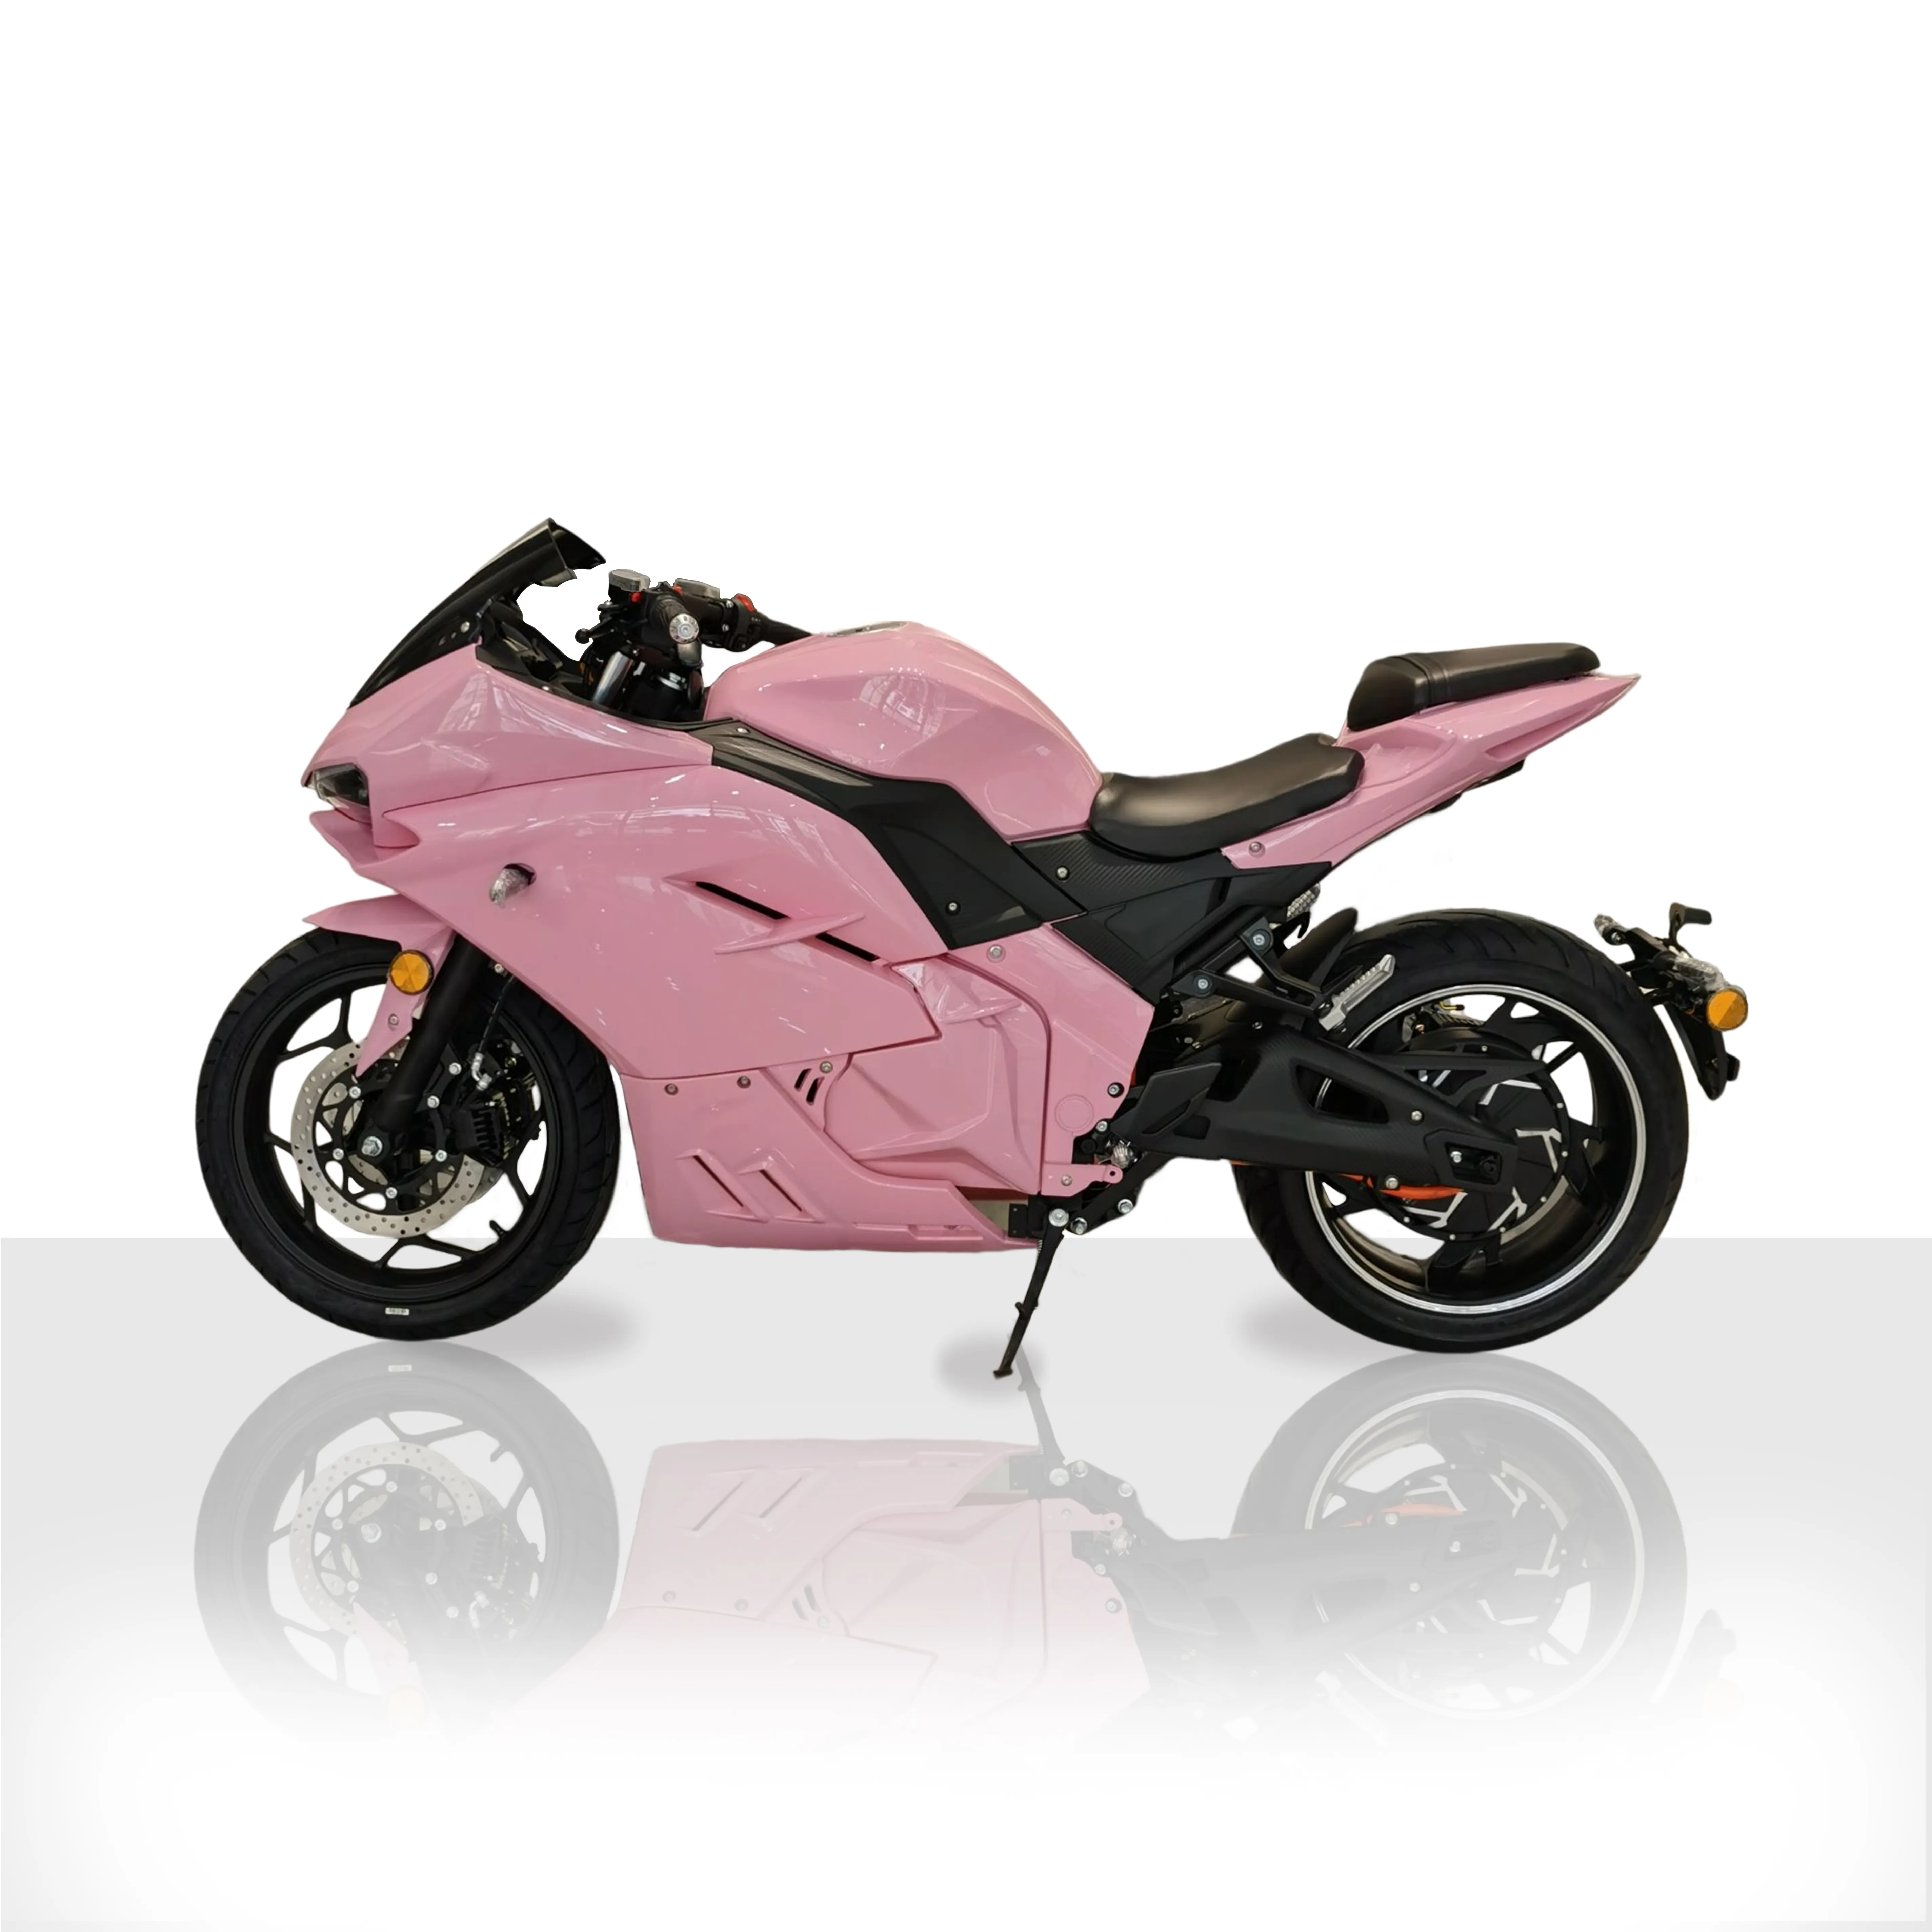 5000W 10KW 140 KM/H sport da corsa ad alta velocità rosa importazione ed esportazione moto per donna Lady Girl